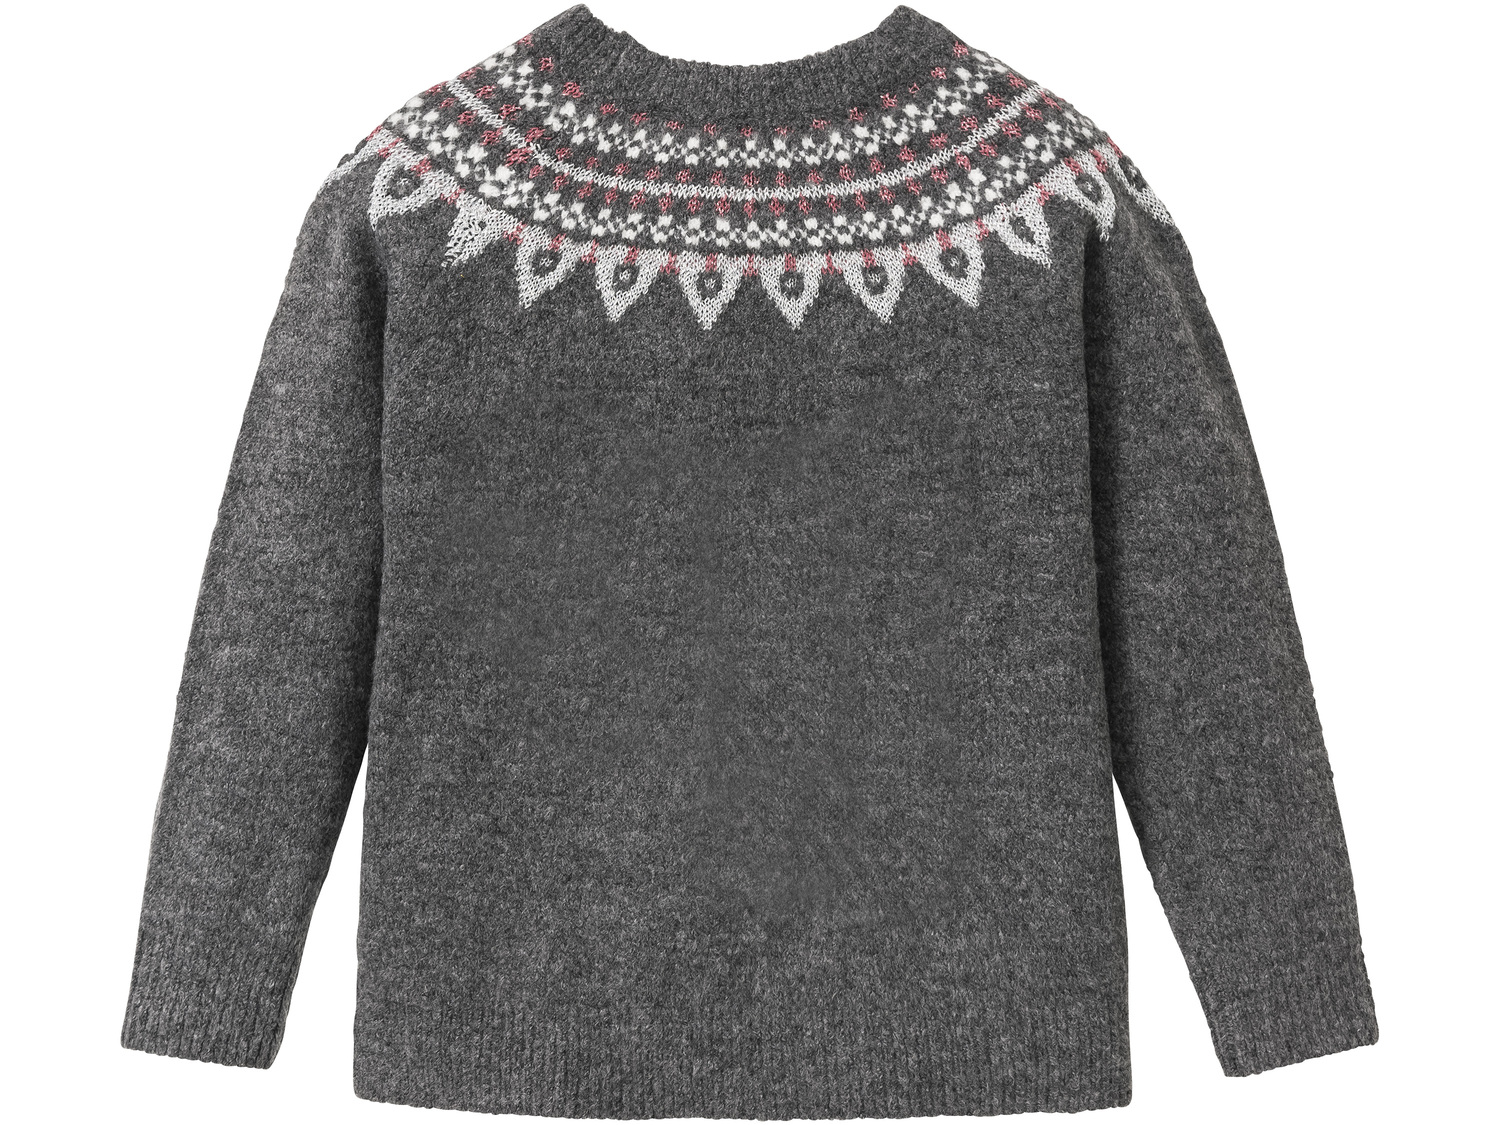 Sweter dziewczęcy Pepperts, cena 34,99 PLN 
- miękki i puszysty
- rozmiary: 134-164
Dostępne ...